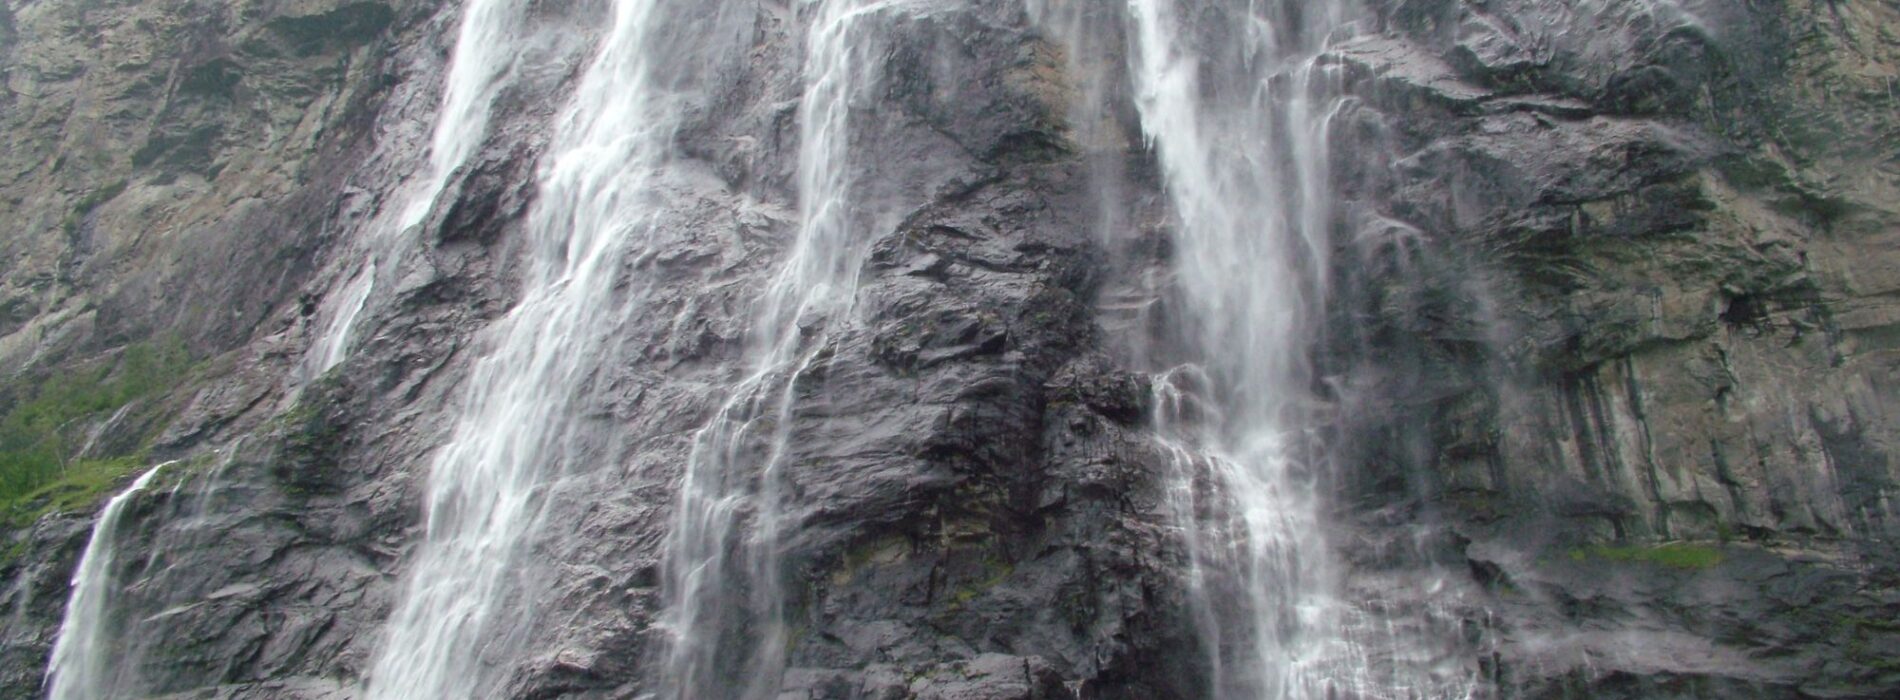 Geiranger watervallen 2000-1200